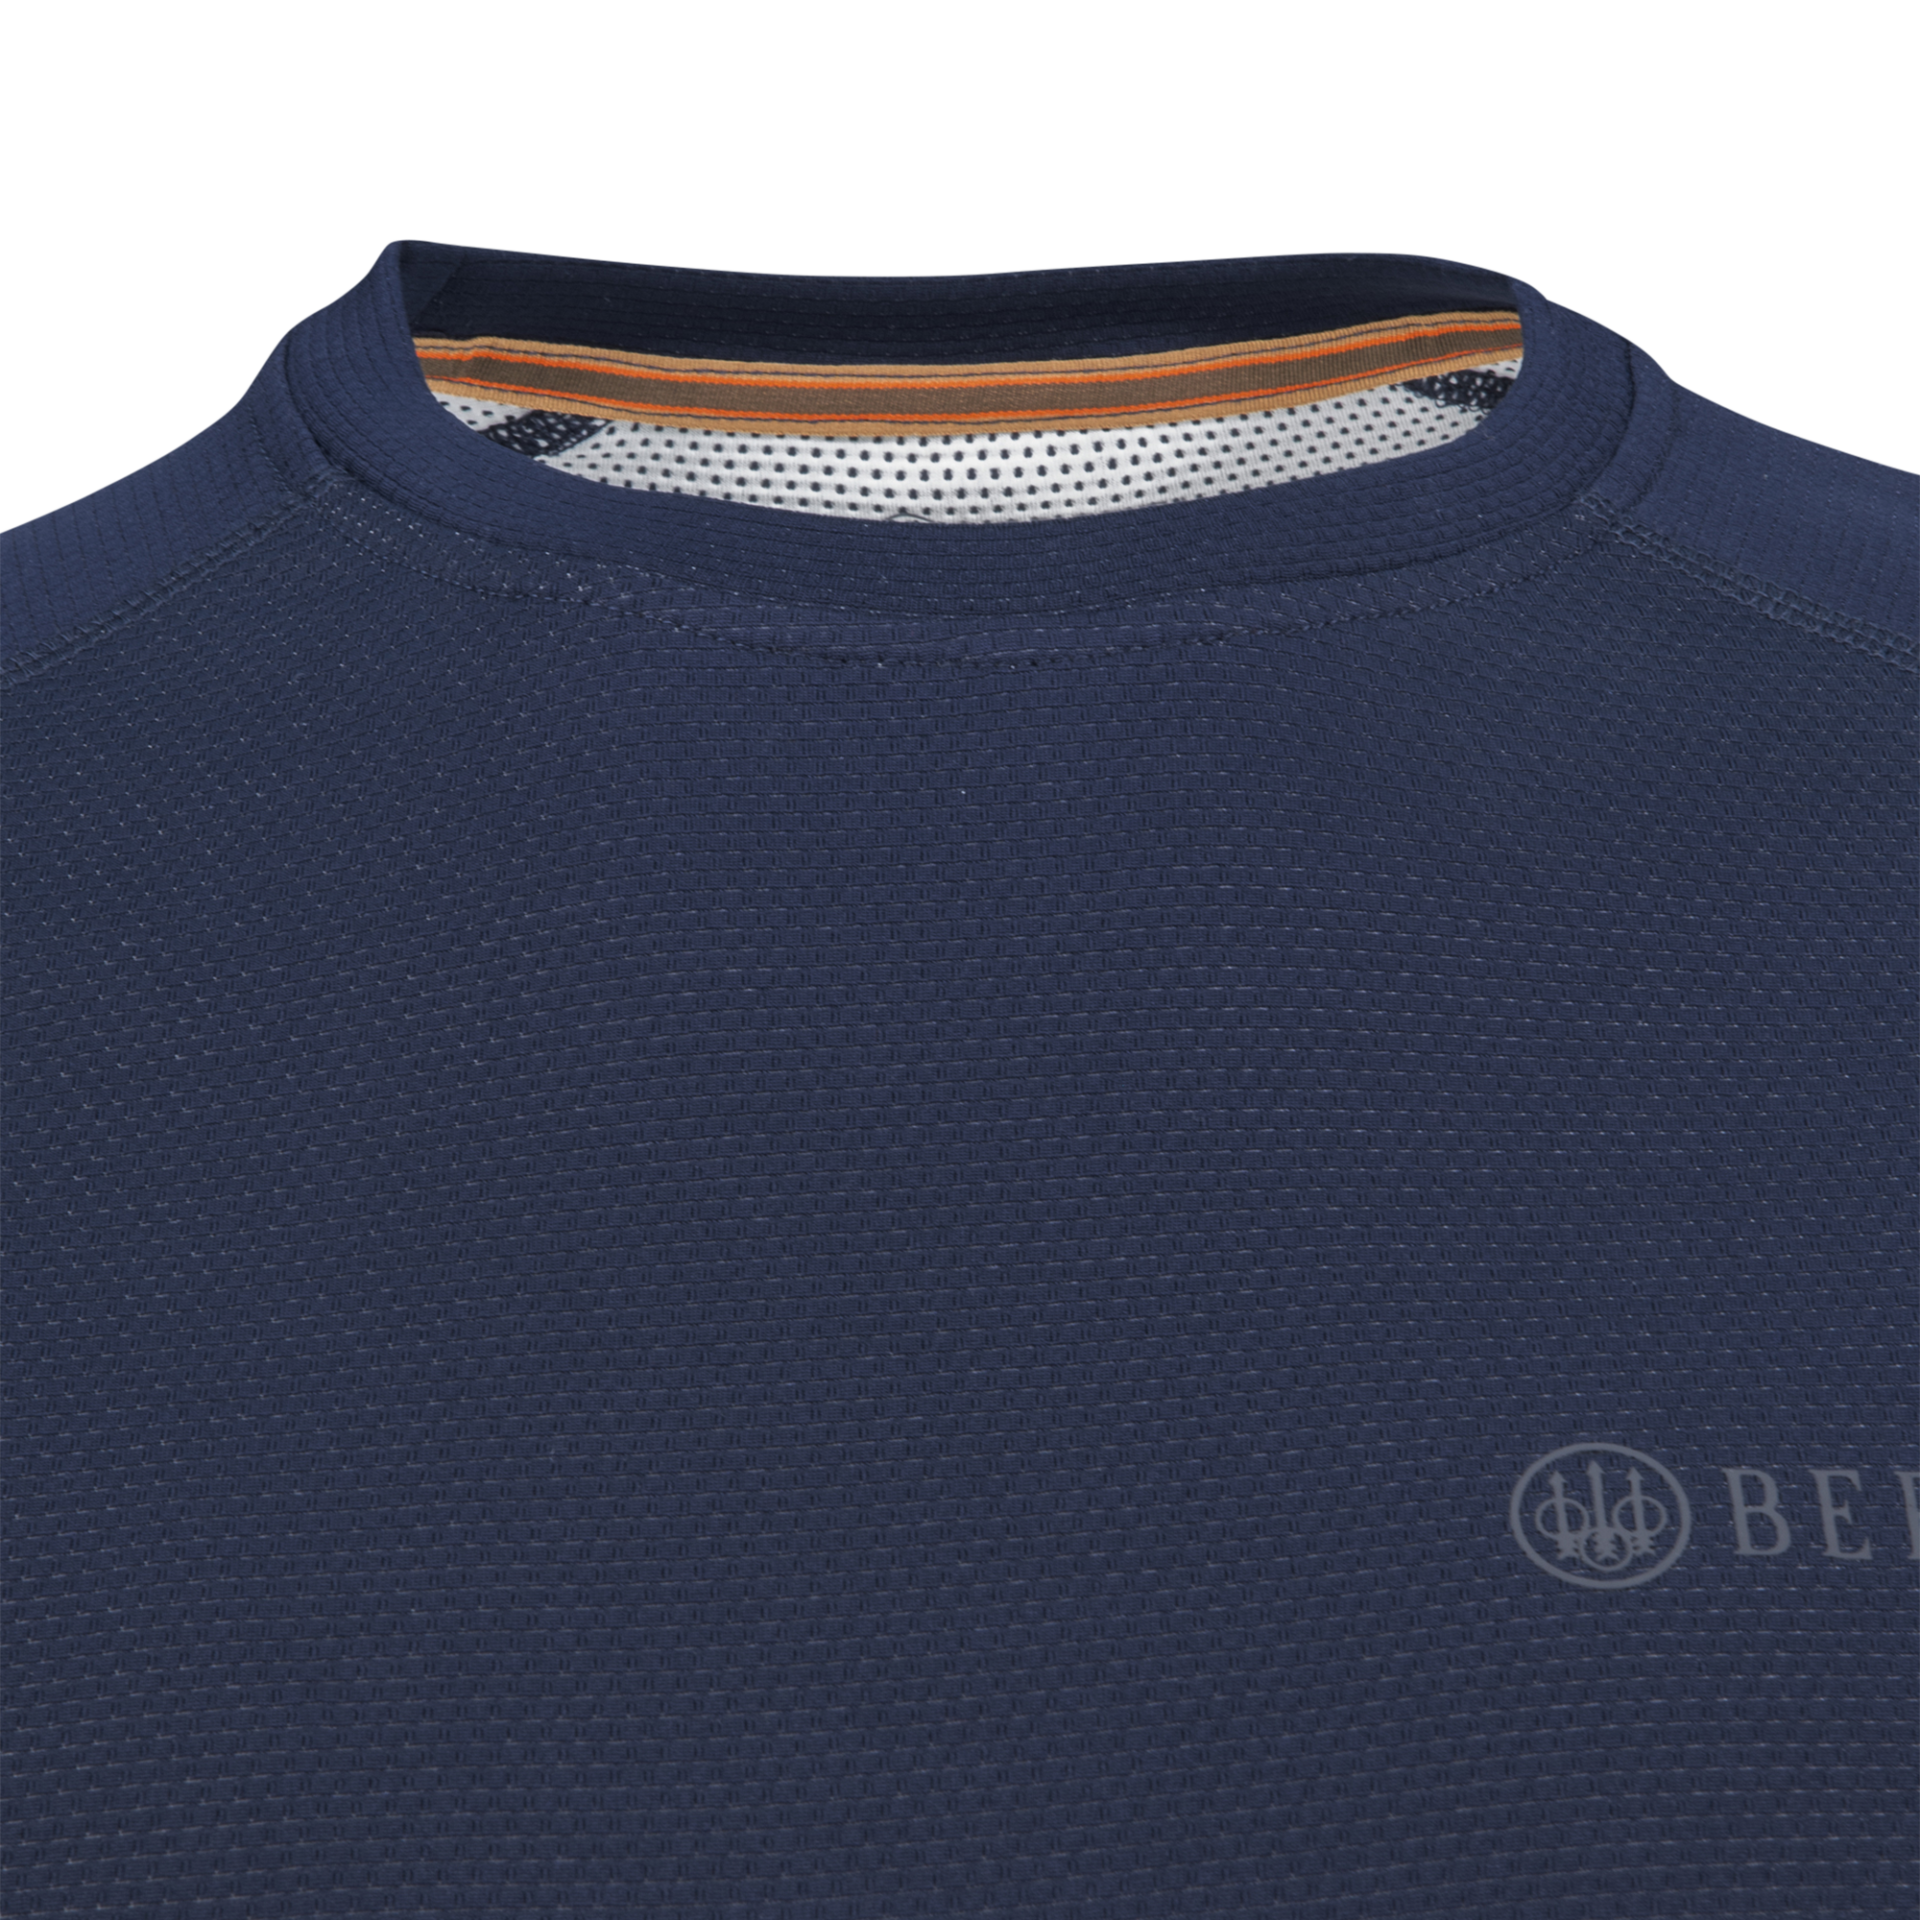 Beretta Long Sleeve Blue T-shirt Close Up